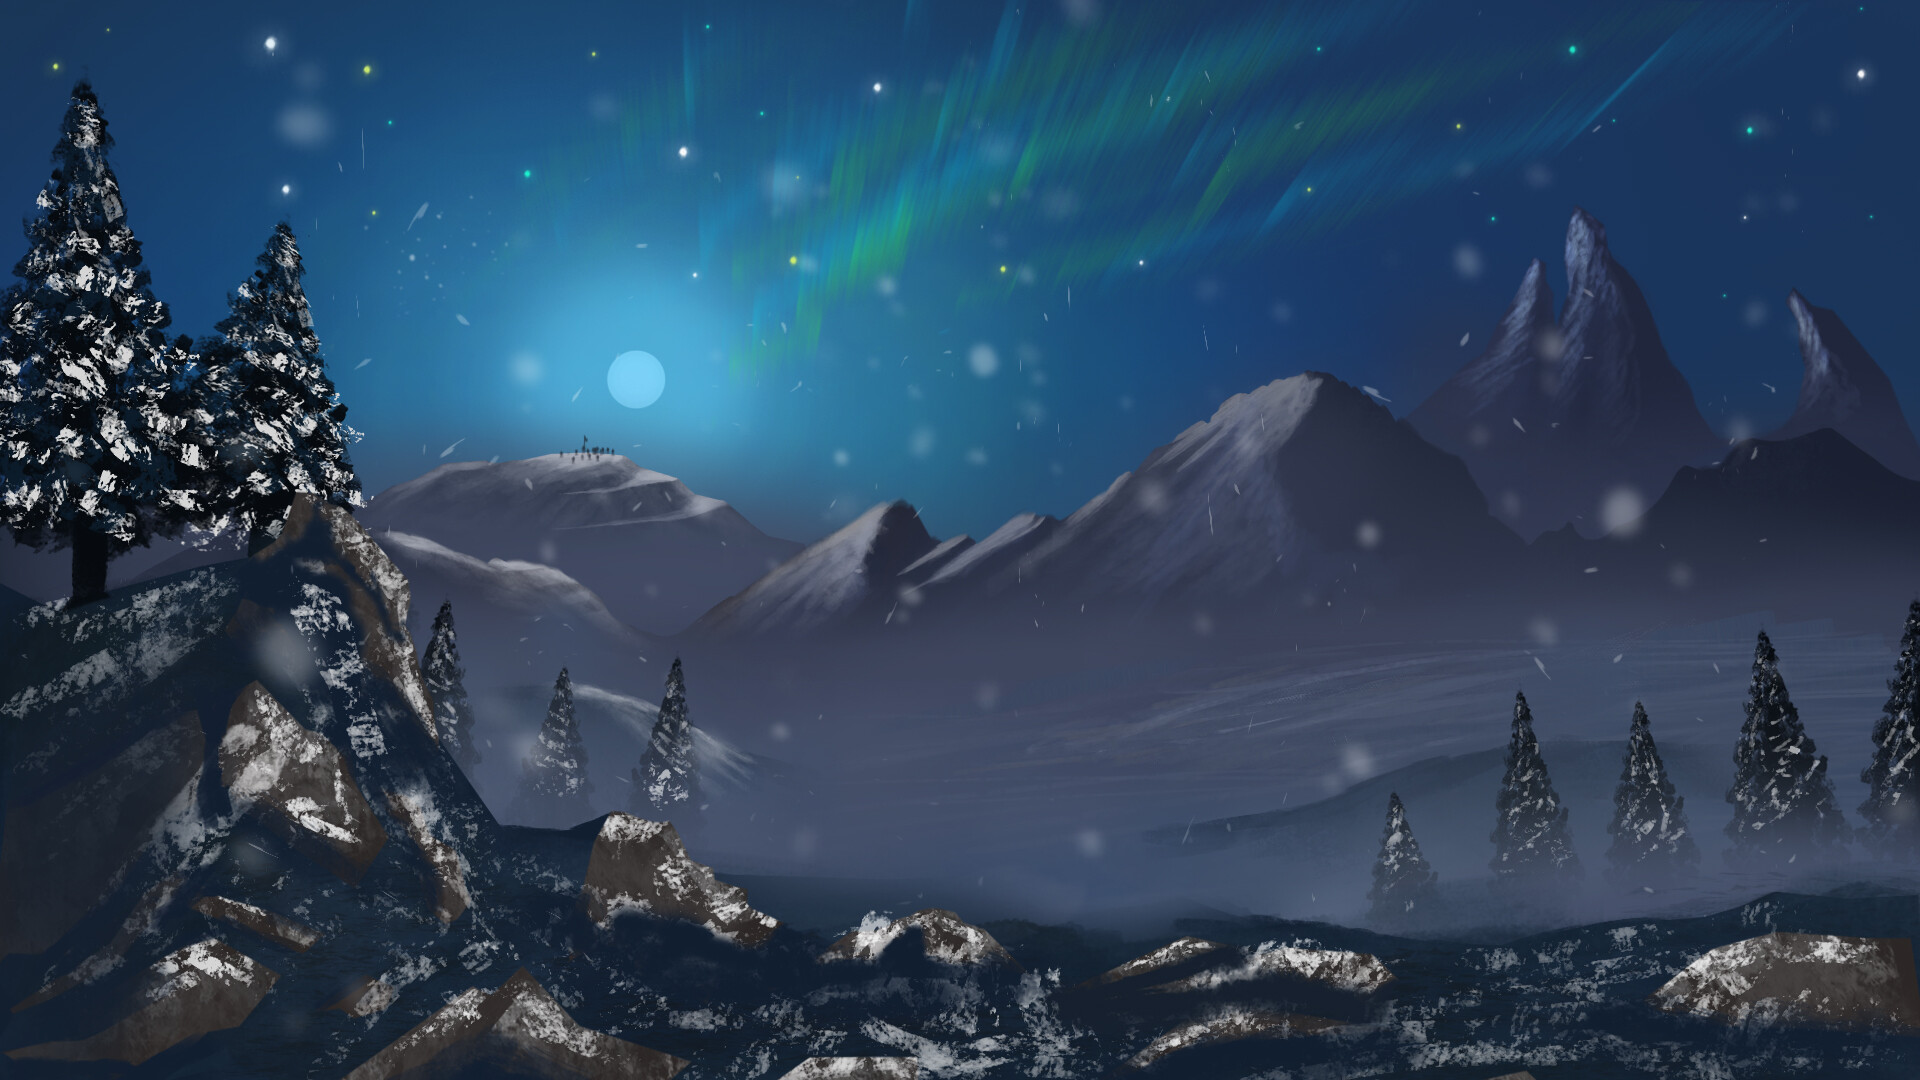 ArtStation - Snow mountains